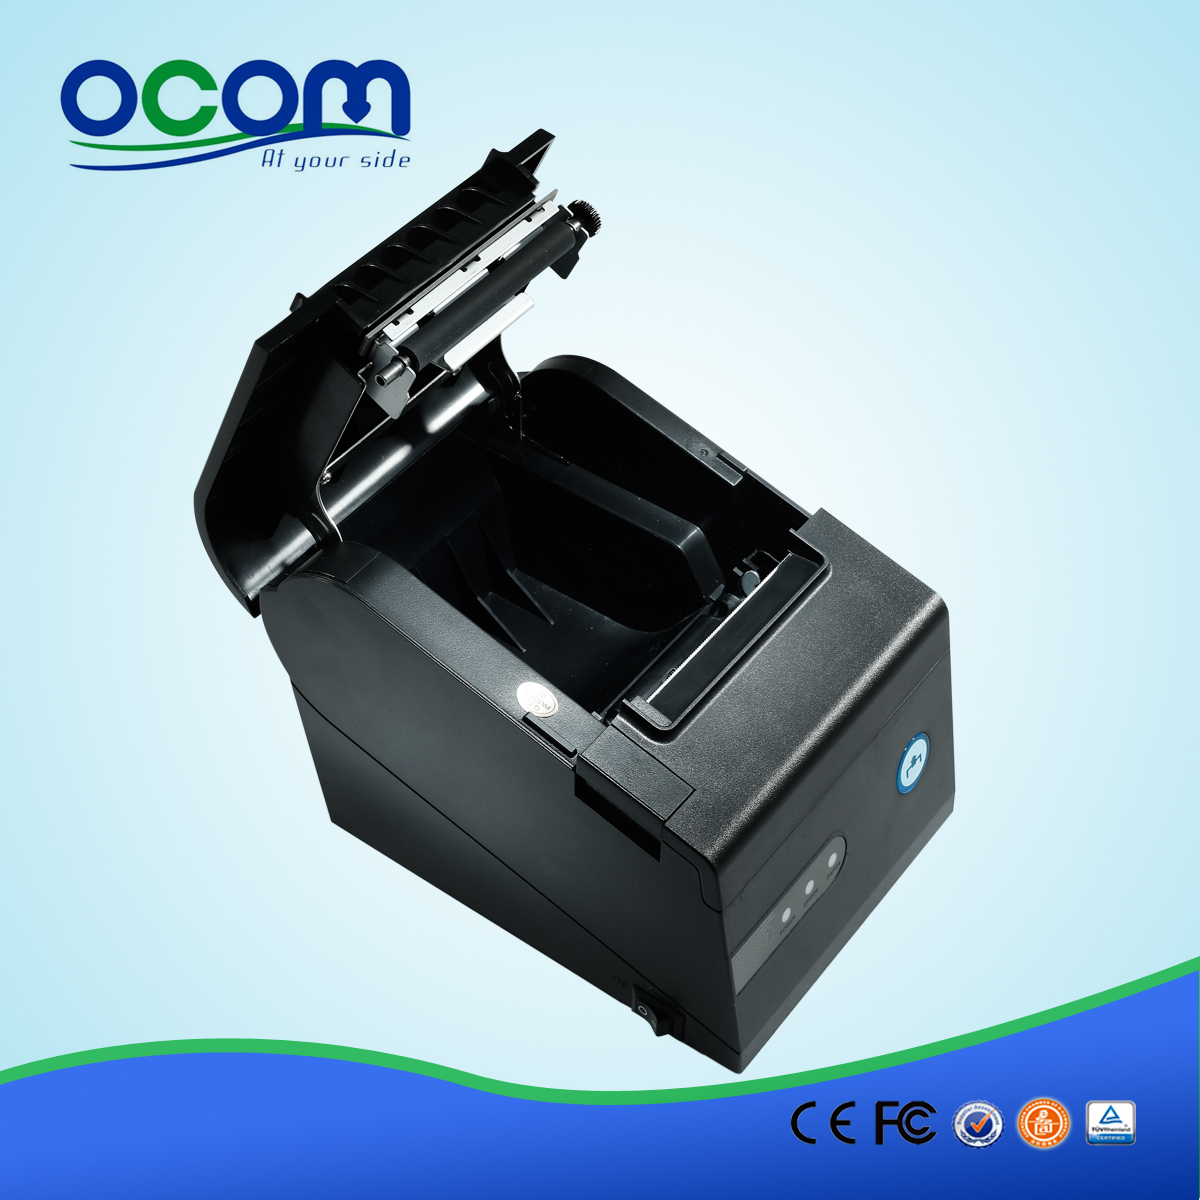 80mm Fabricant POS machine d'impression facturation Imprimante à reçu thermique